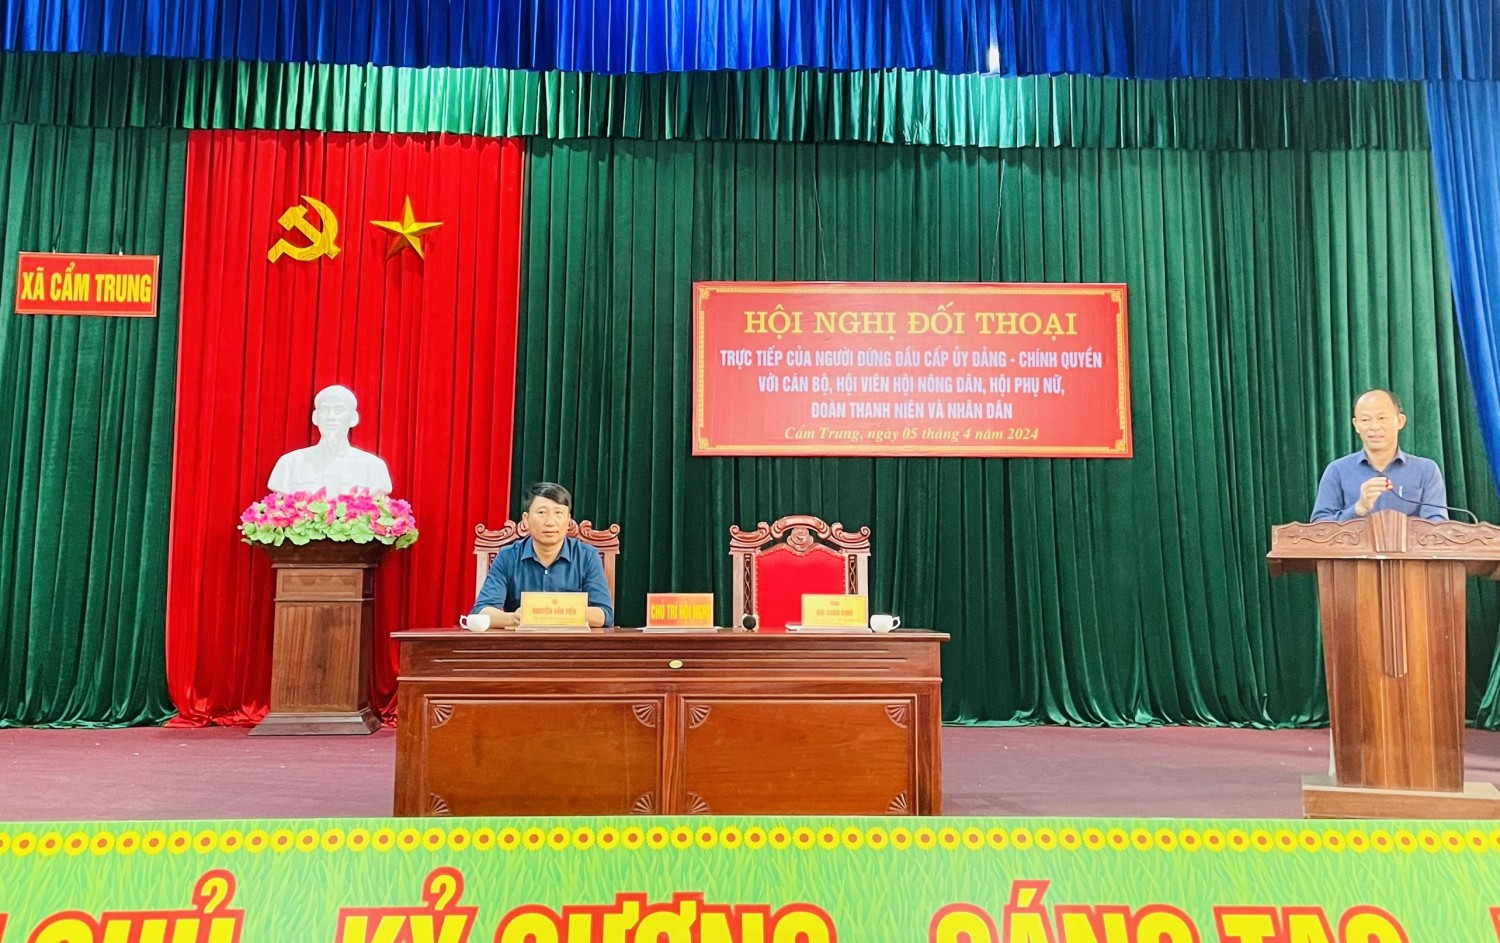 Hội nghị đối thoại giữa người đứng đầu cấp ủy, chính quyền với cán bộ, hội viên nông dân xã Cẩm Trung